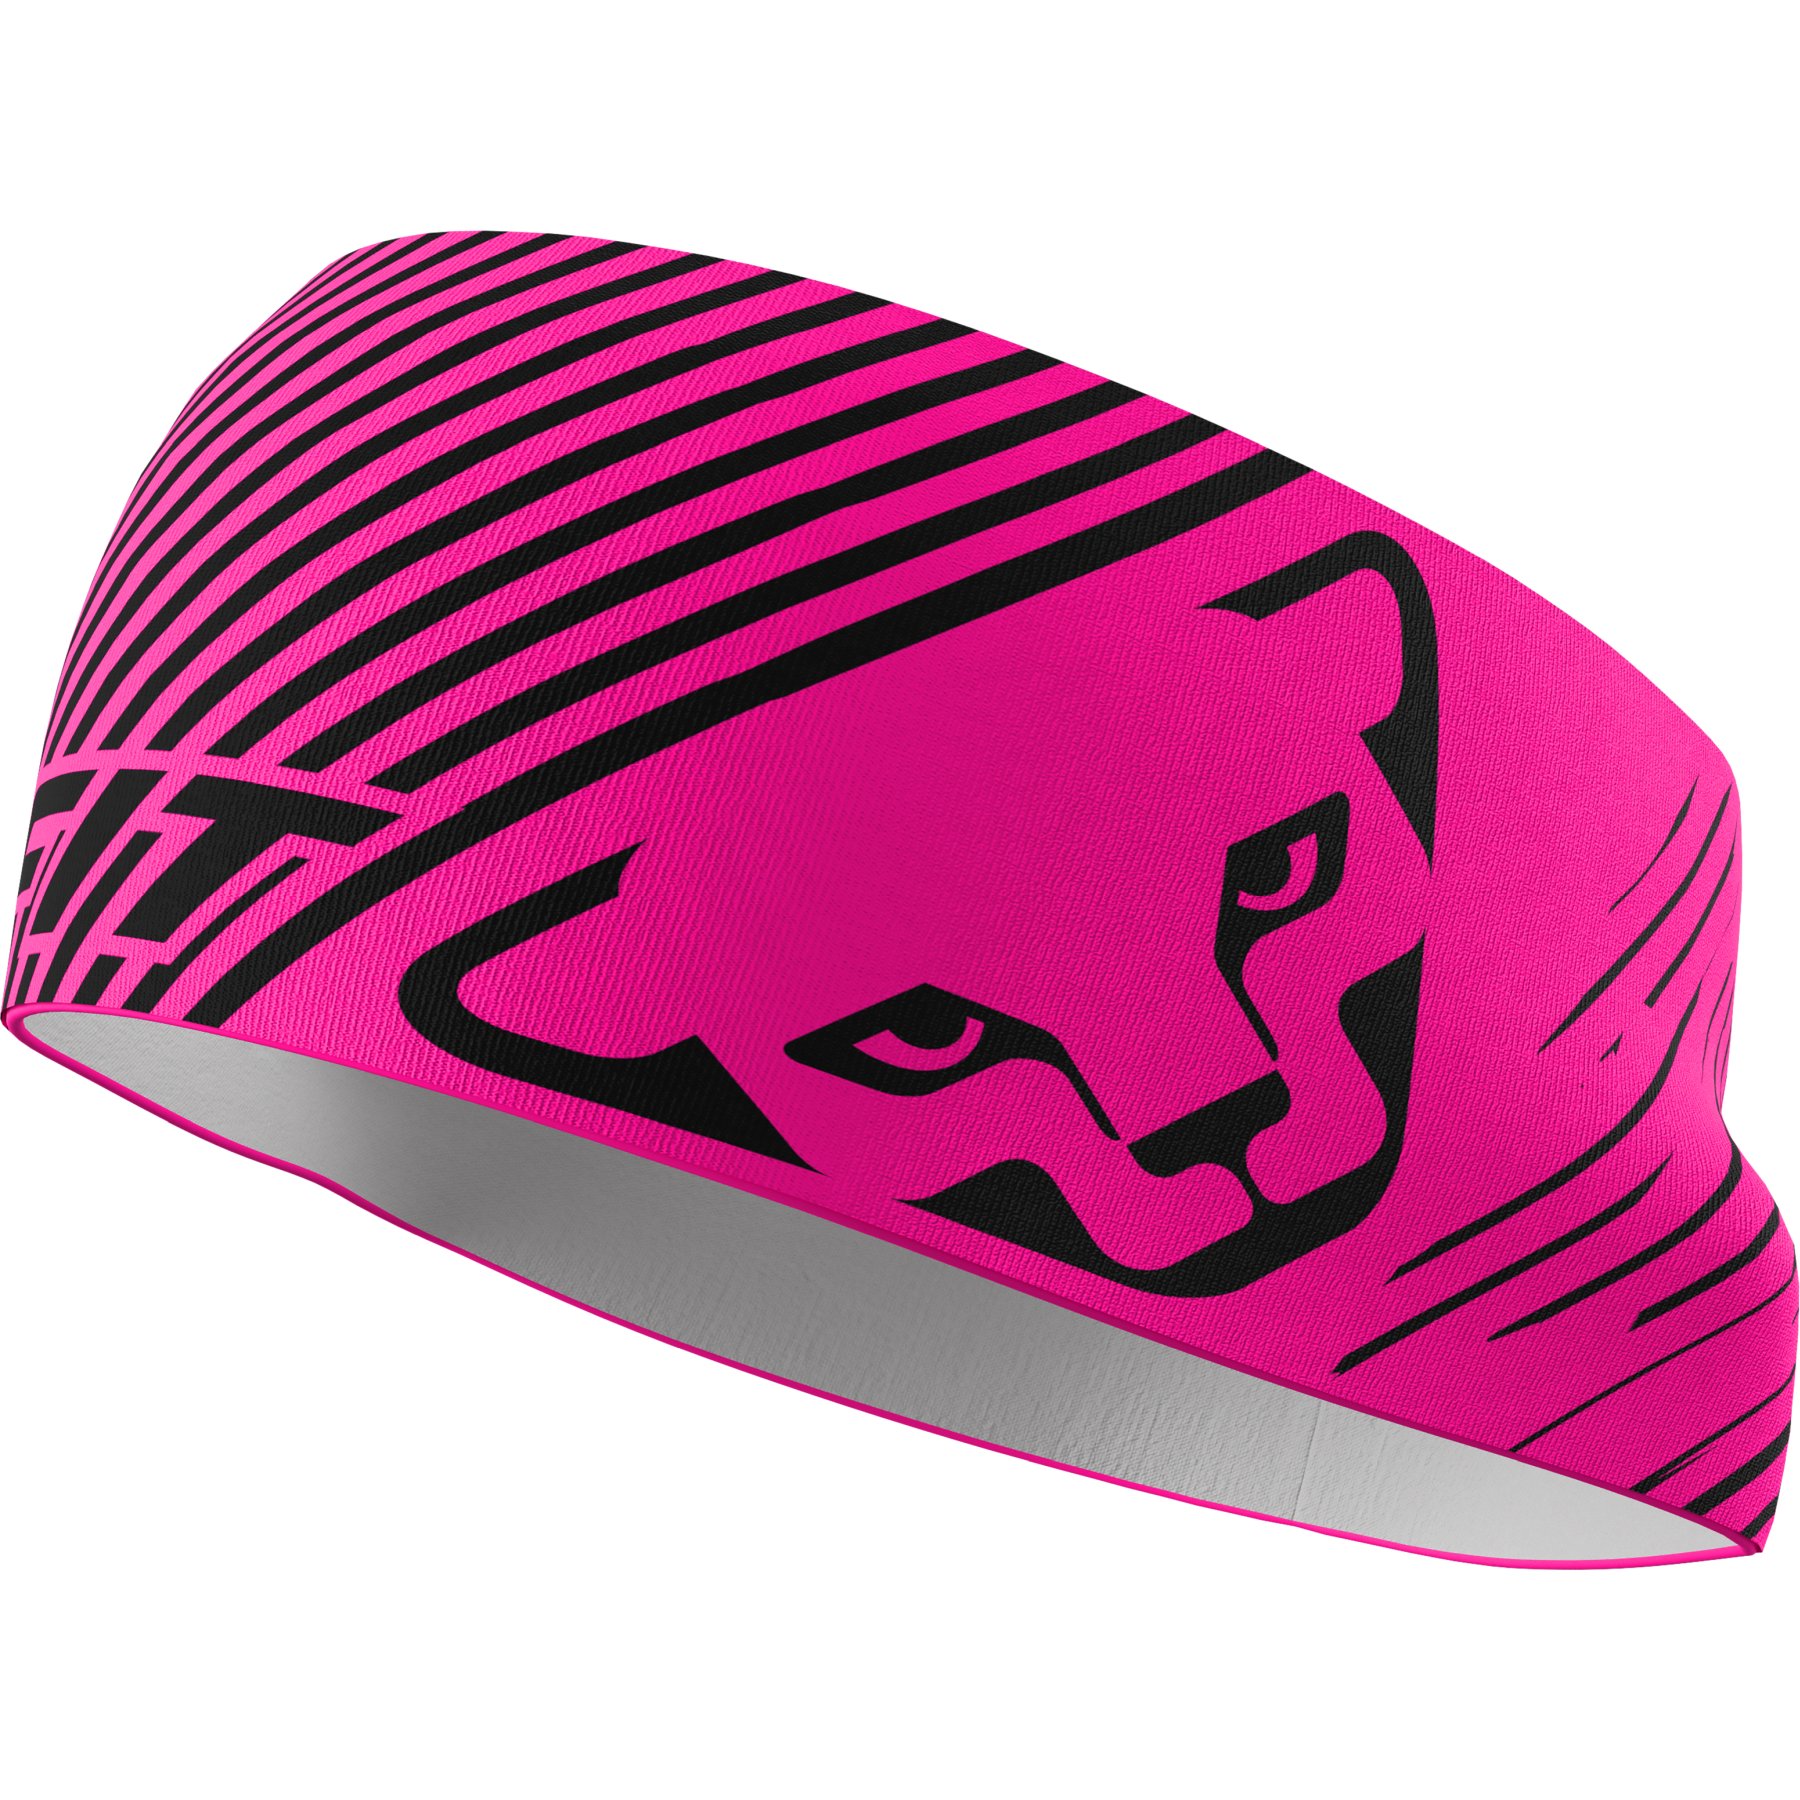 Produktbild von Dynafit Graphic Performance Stirnband - Pink Glo Striped